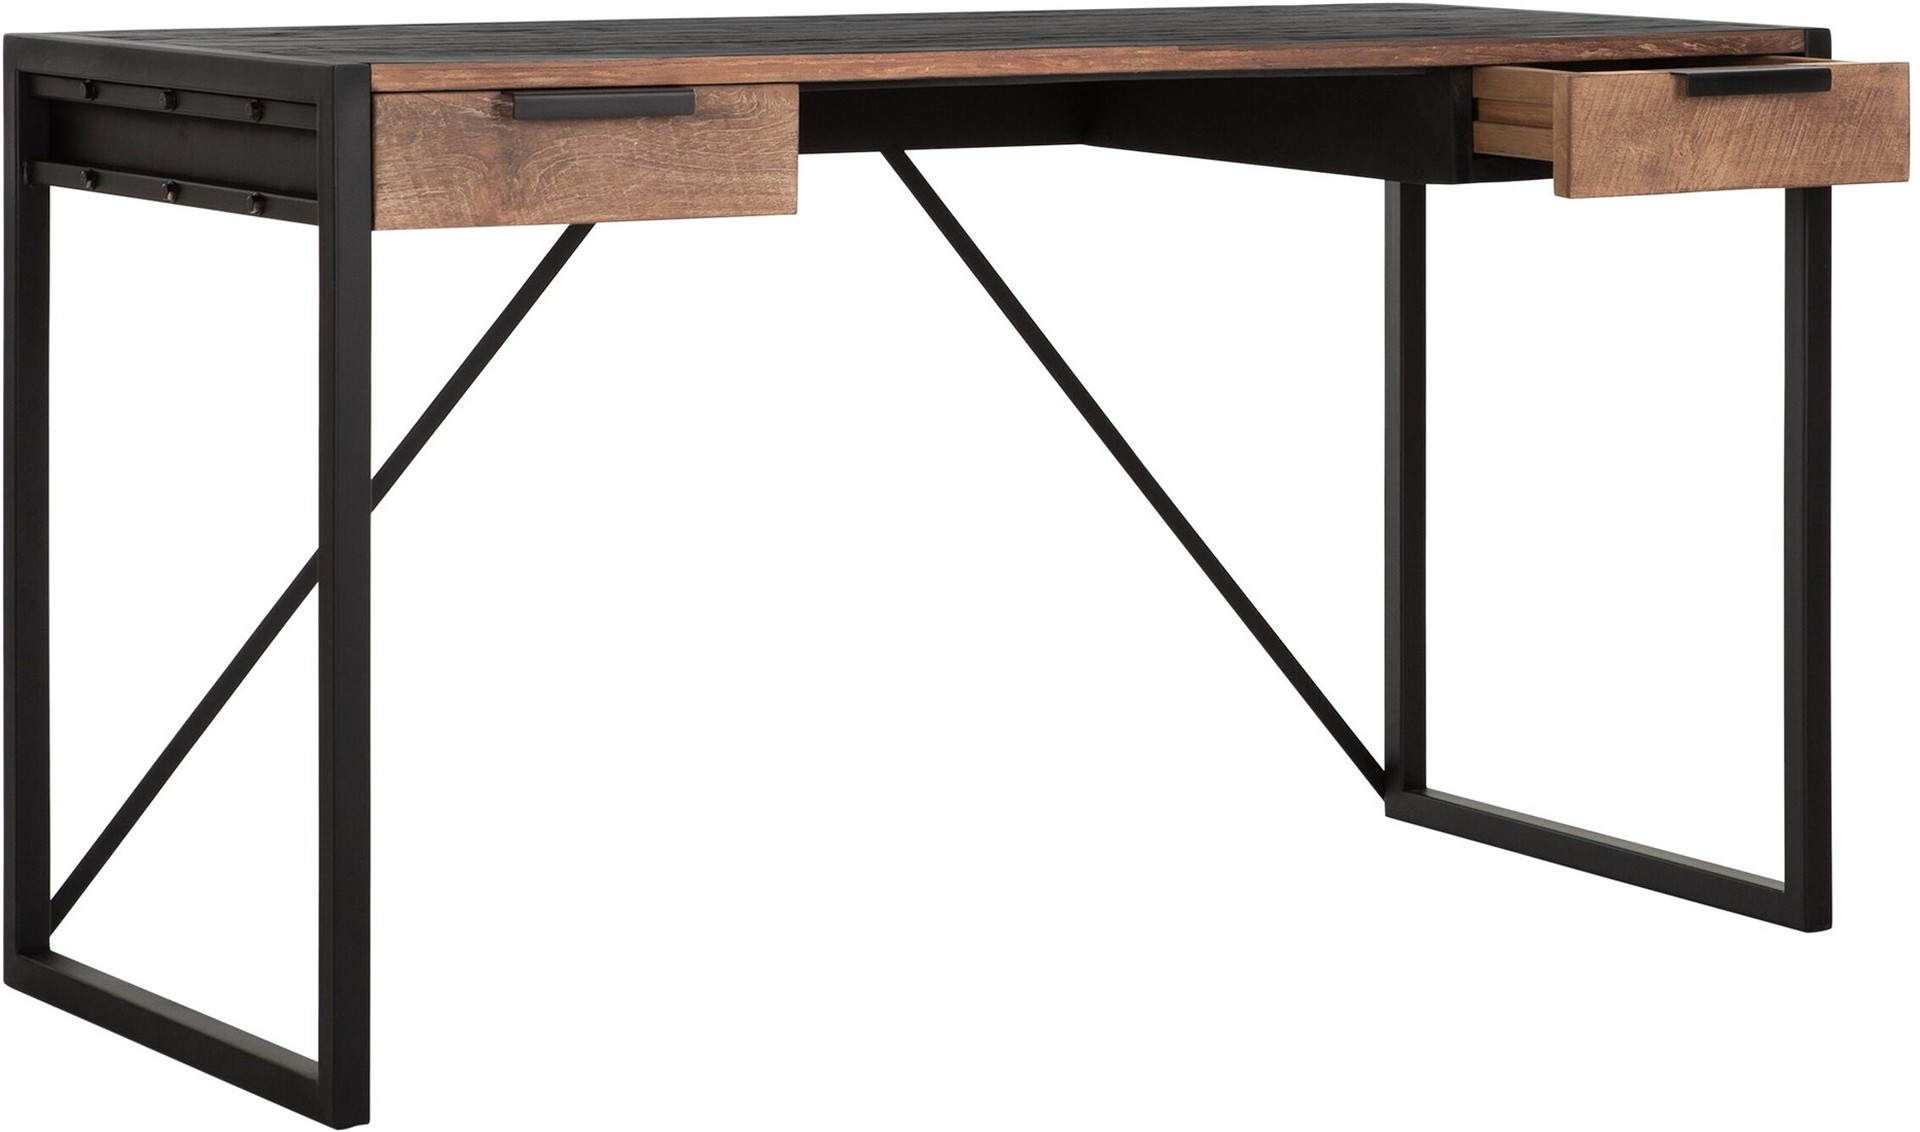 Der Schreibtisch Cosmo wurde aus recyceltem Teakholz gefertigt, welches einen natürlichen Farbton besitzt. Das Gestell ist aus Metall und ist Schwarz. Der Schreibtisch verfügt über zwei Schubladen.